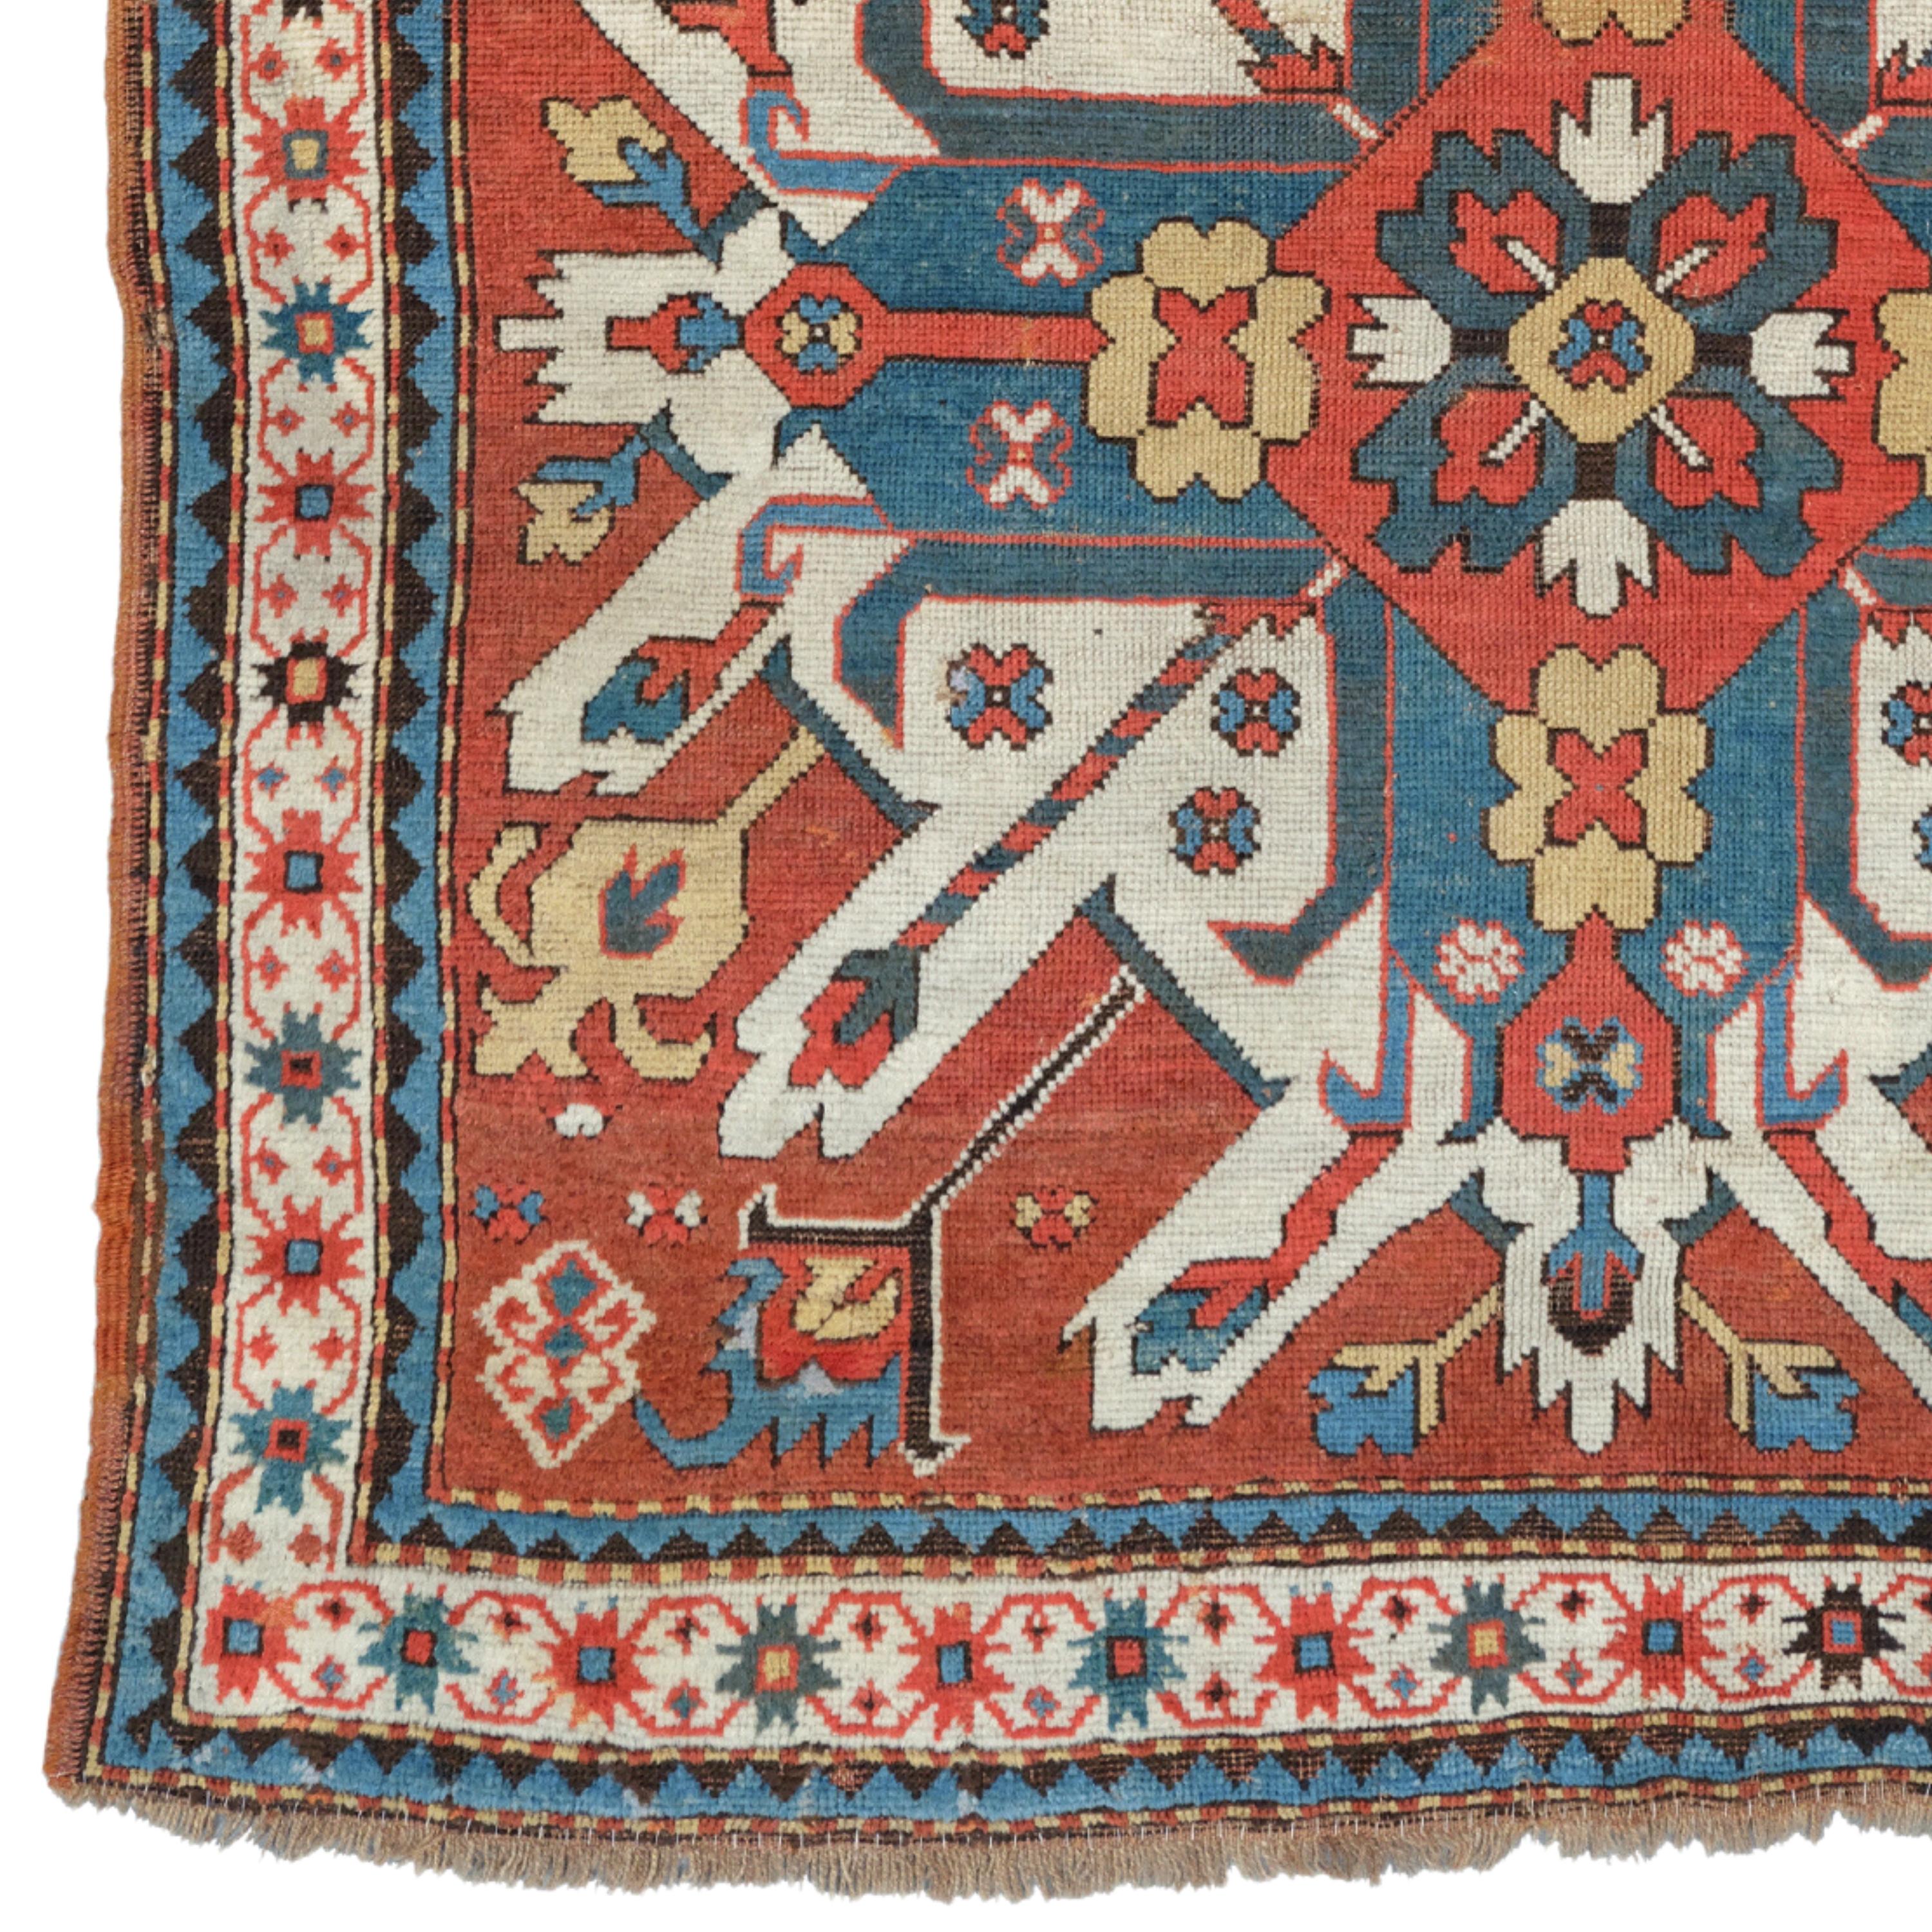 Tapis kazak de l'aigle du 19e siècle
Taille : 133x250 cm

Cet impressionnant tapis Eleg du XIXe siècle est un chef-d'œuvre reflétant l'artisanat élégant et sophistiqué d'une période historique.

Richesse des motifs : Le tapis est décoré de motifs